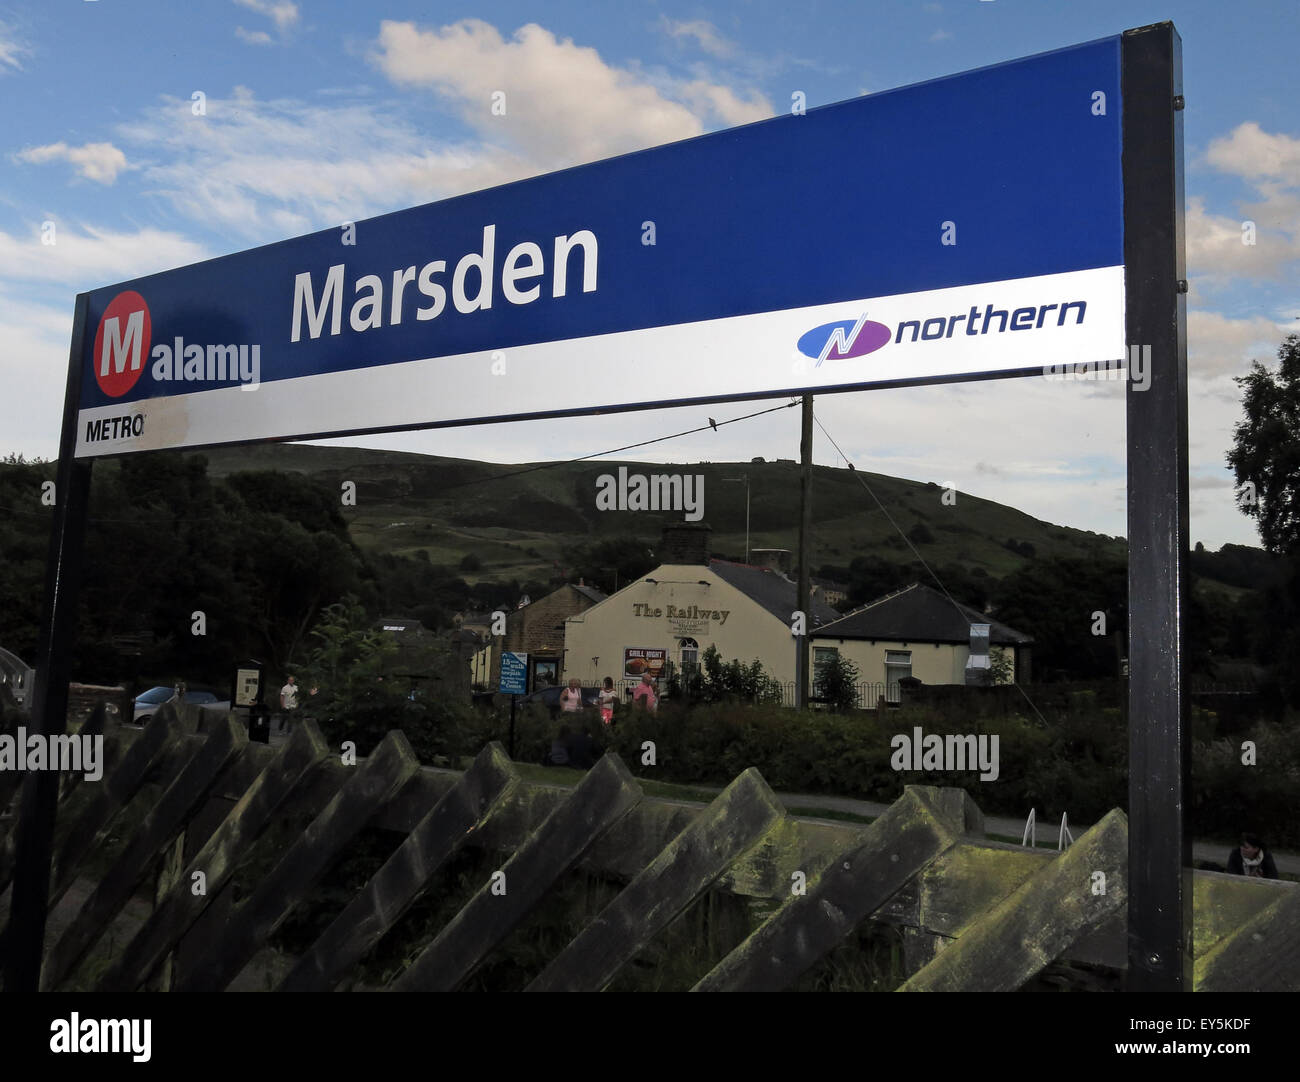 La gare de Marsden signer,entretenu par Northern rail, métro West Yorkshire, England, UK Banque D'Images